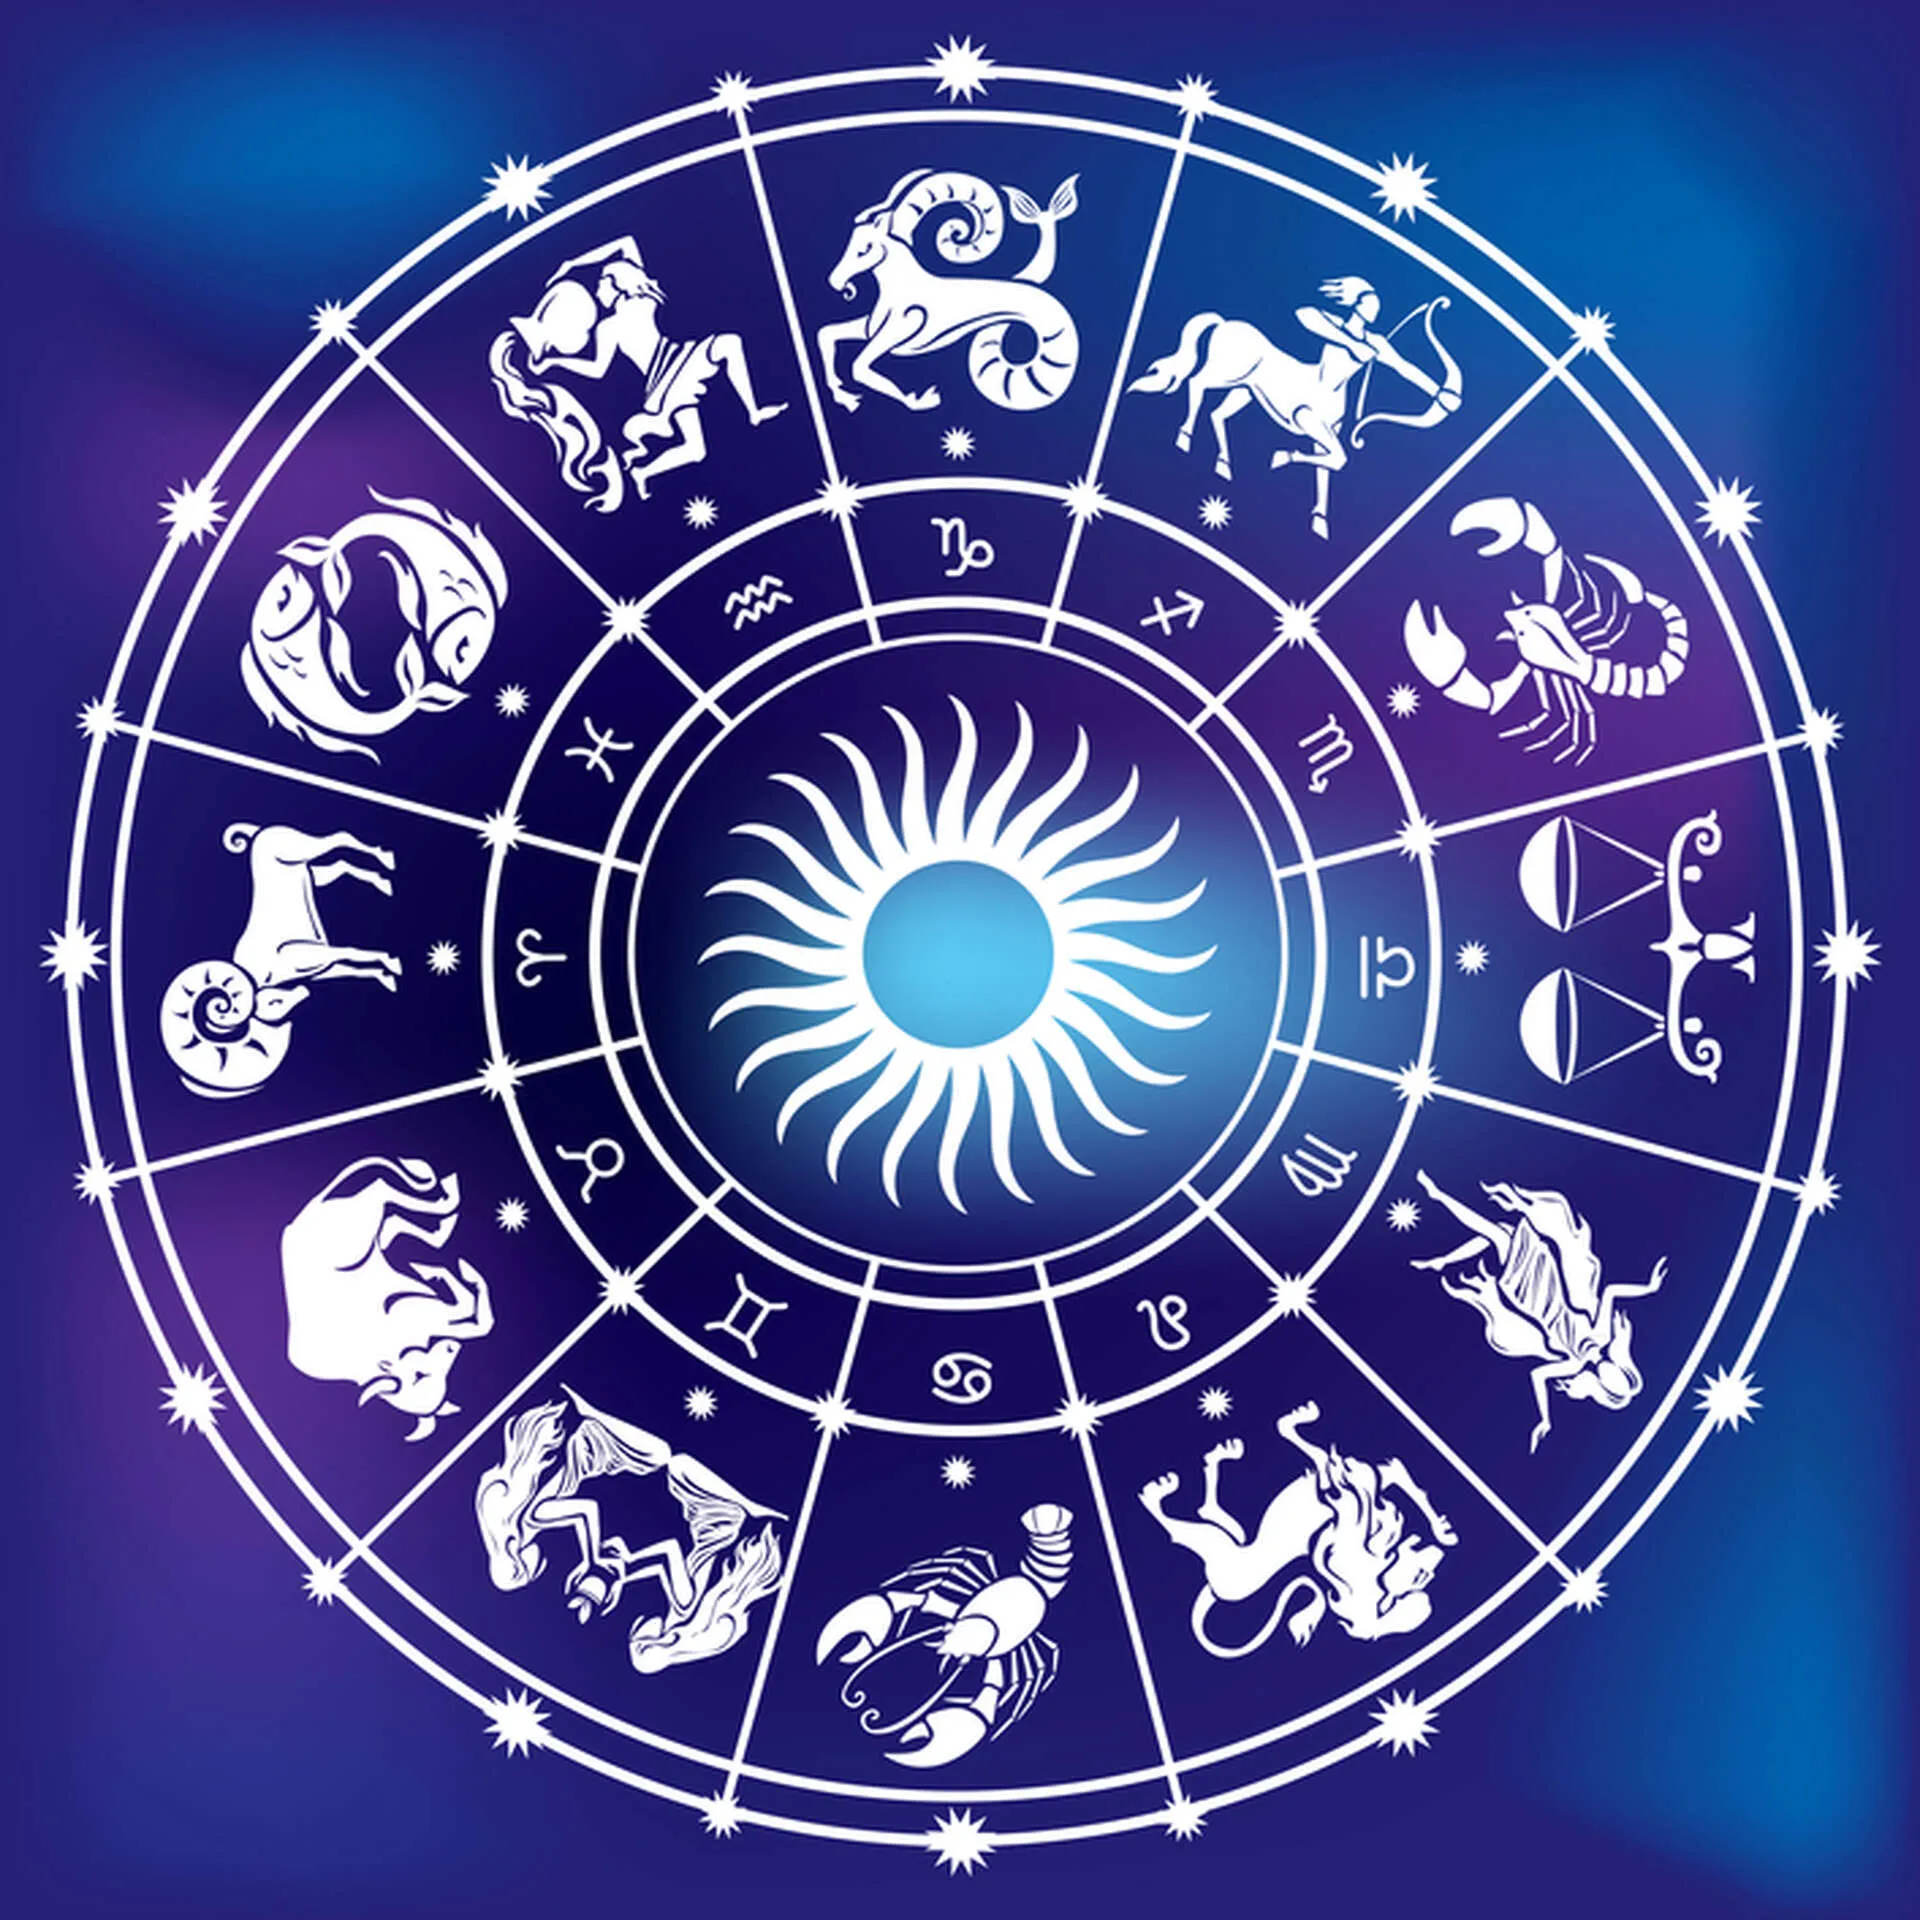 Horoskop - Prognoza dla znaków zodiaku. Uczucia Styczeń 2021